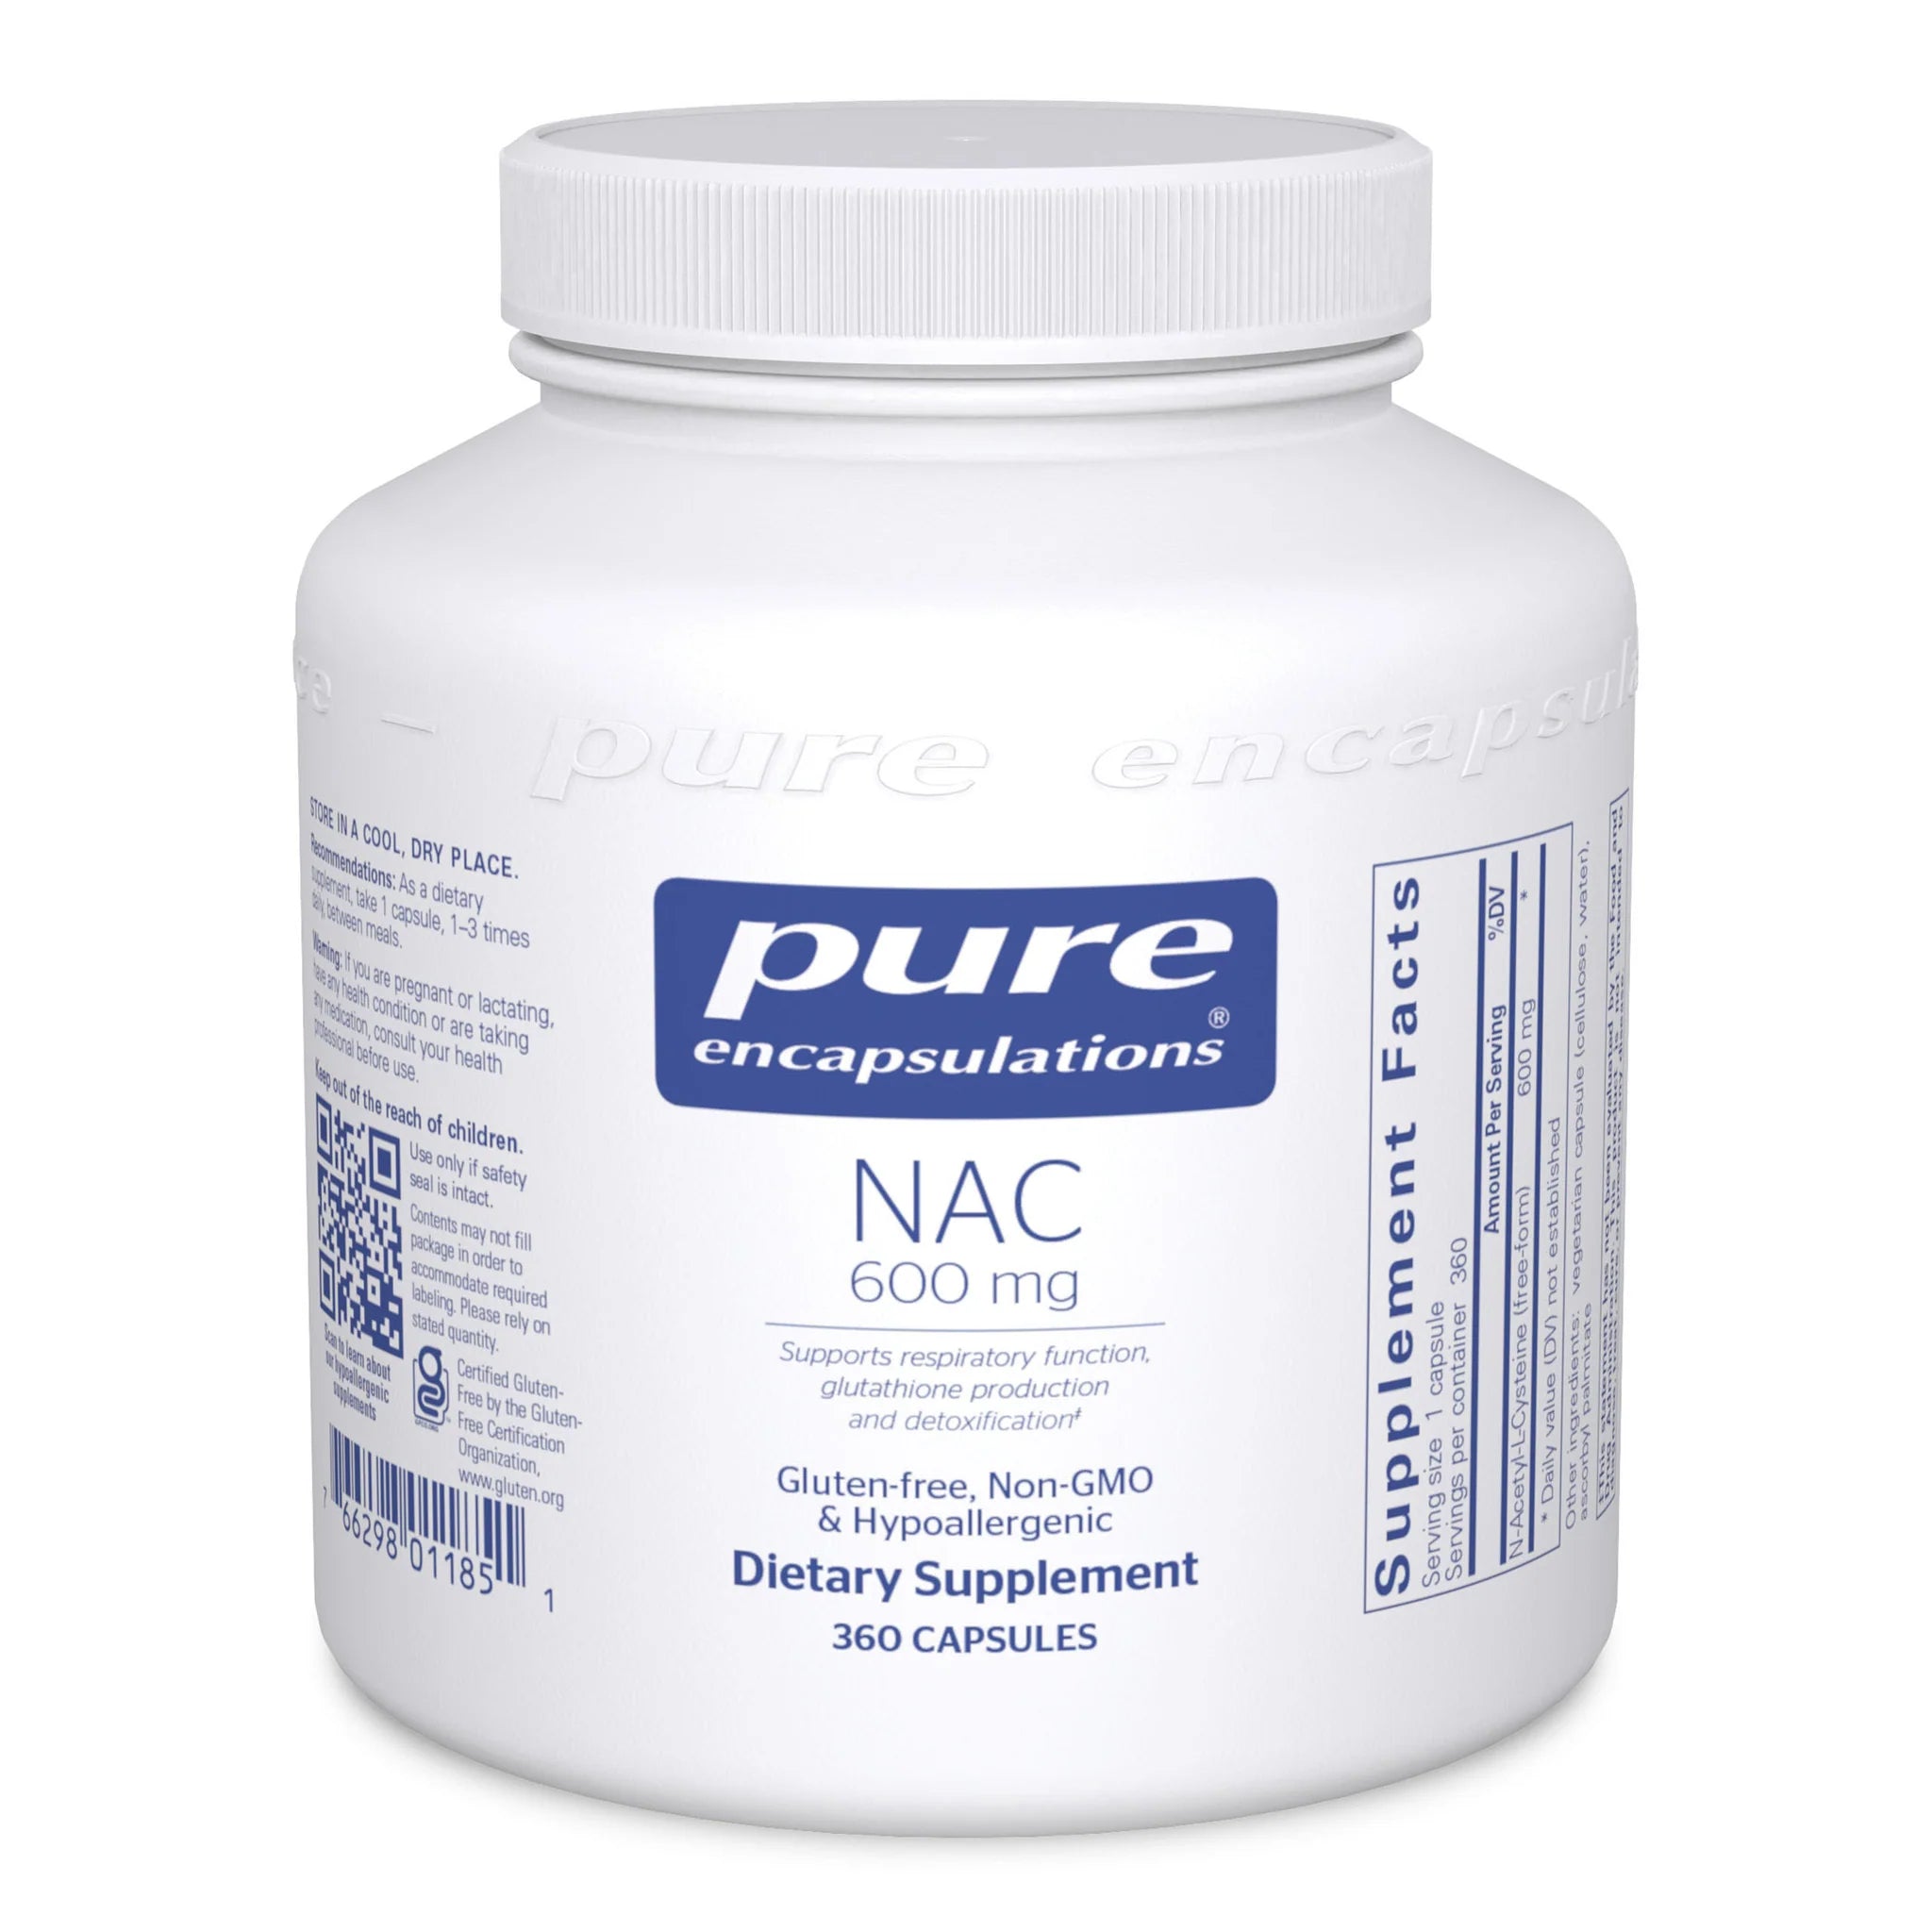 NAC 600 mg